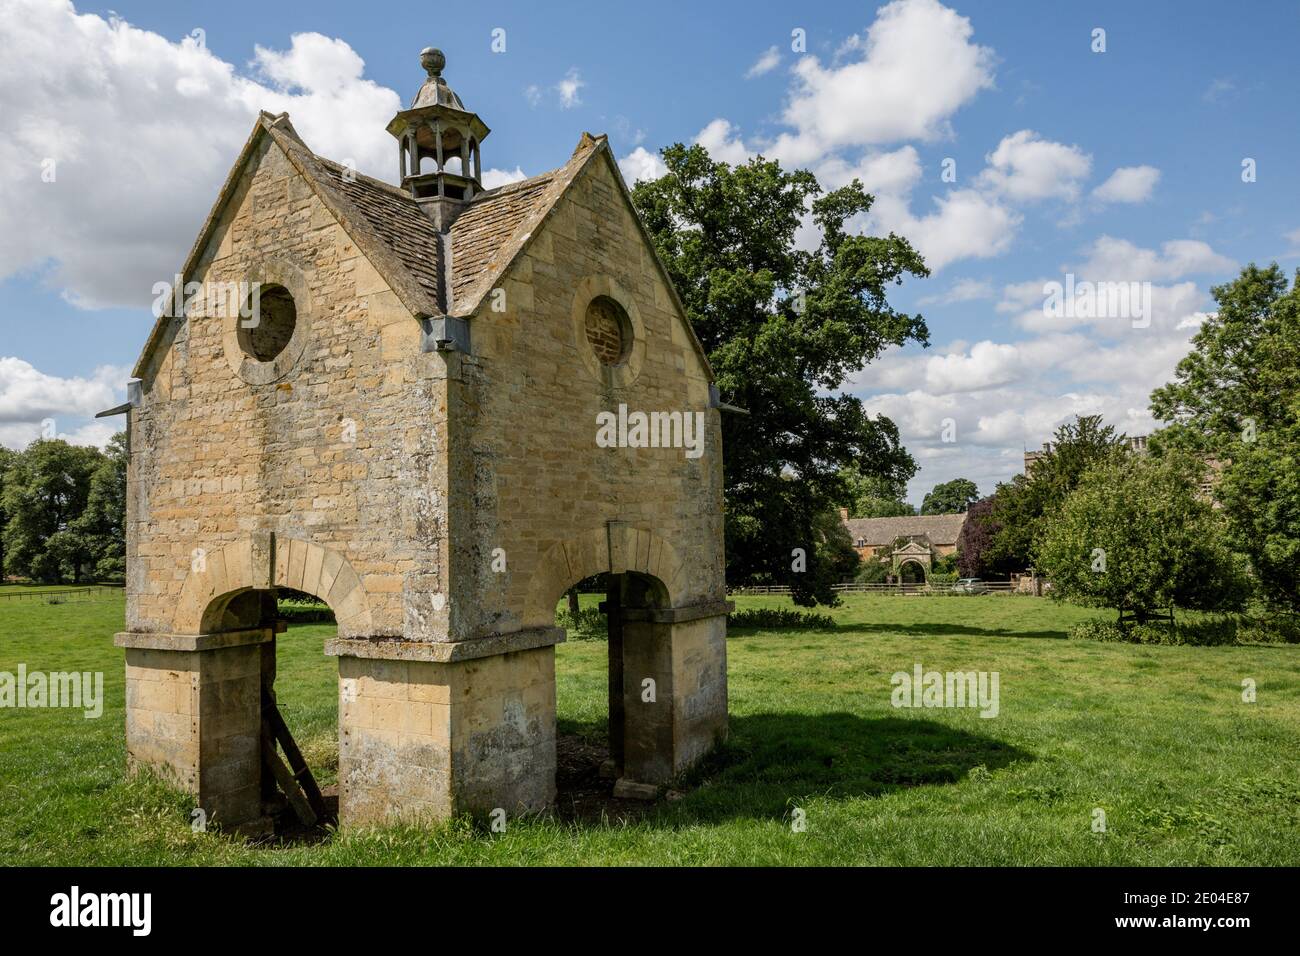 Un pigeonnier près de Chastleton House, une maison de campagne de Jacobean située à Chastleton près de Moreton-in-Marsh, Oxfordshire. Banque D'Images